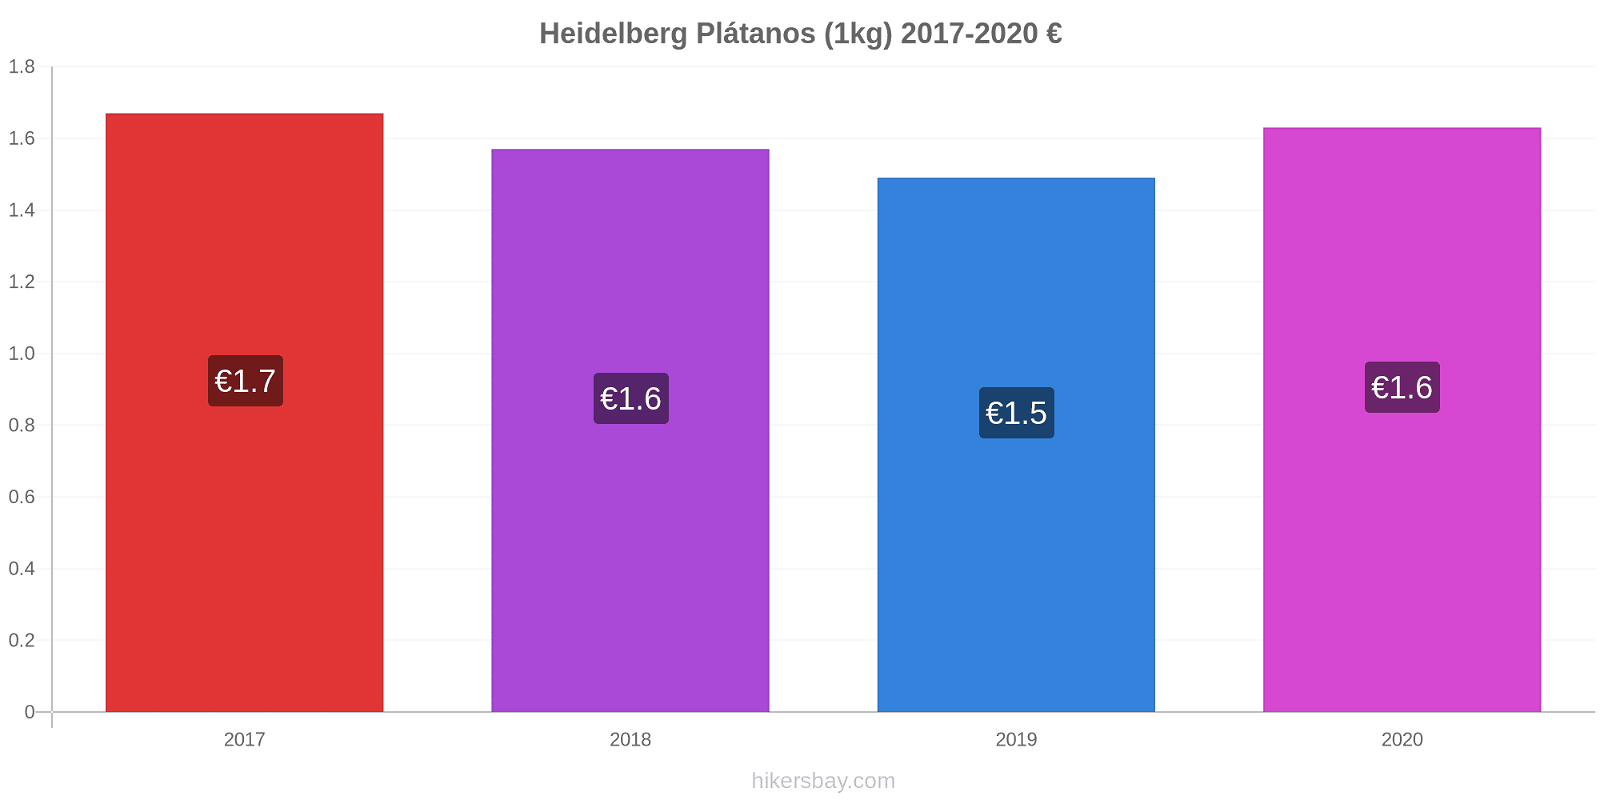 Heidelberg cambios de precios Plátano (1kg) hikersbay.com